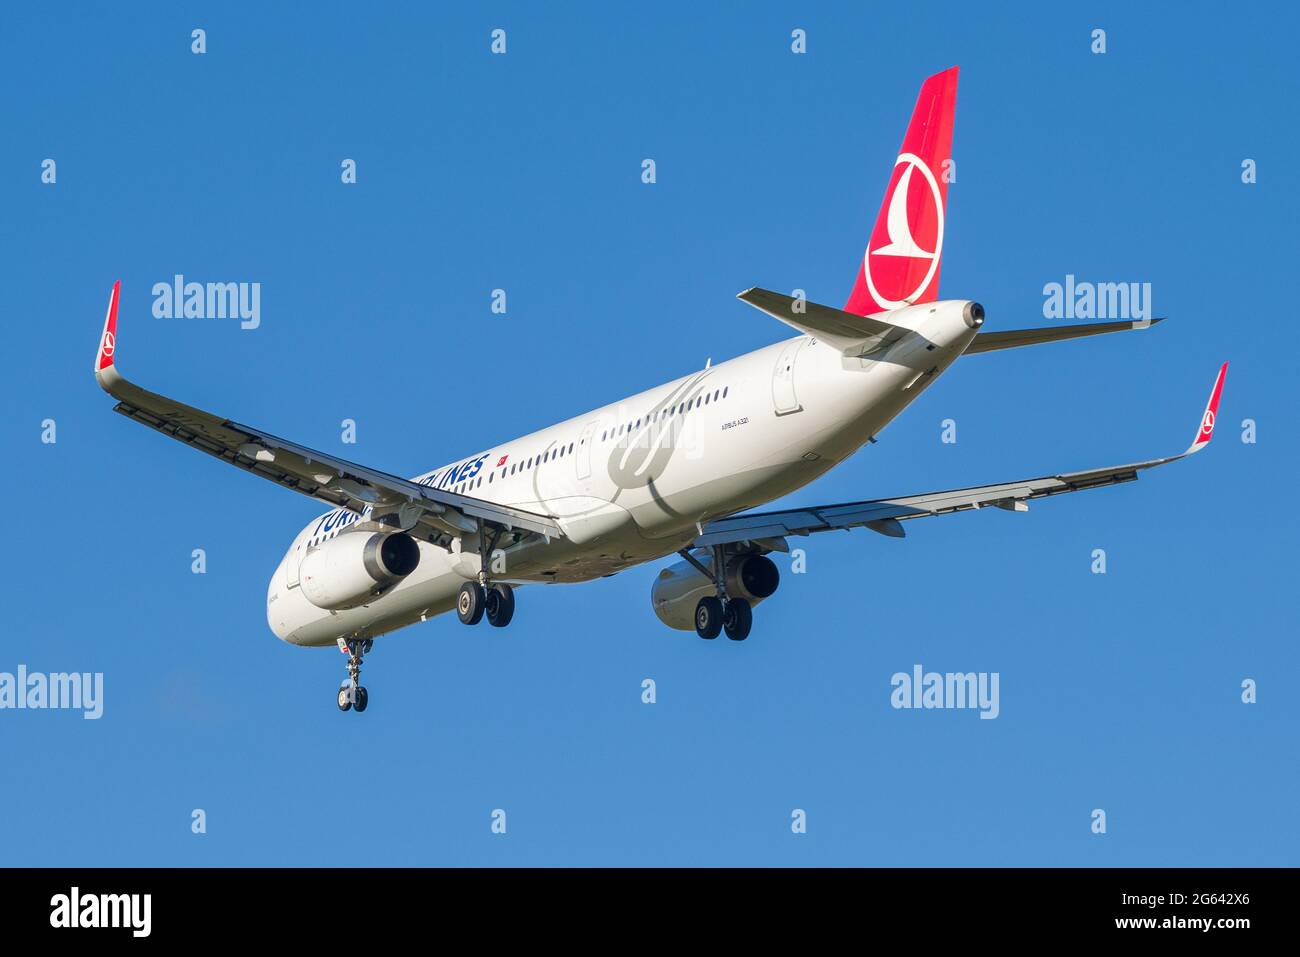 SAINT-PÉTERSBOURG, RUSSIE - 25 OCTOBRE 2018 : vol de départ Airbus A321-231 (TC-JTM) Turkish Airlines en gros plan contre le ciel bleu Banque D'Images